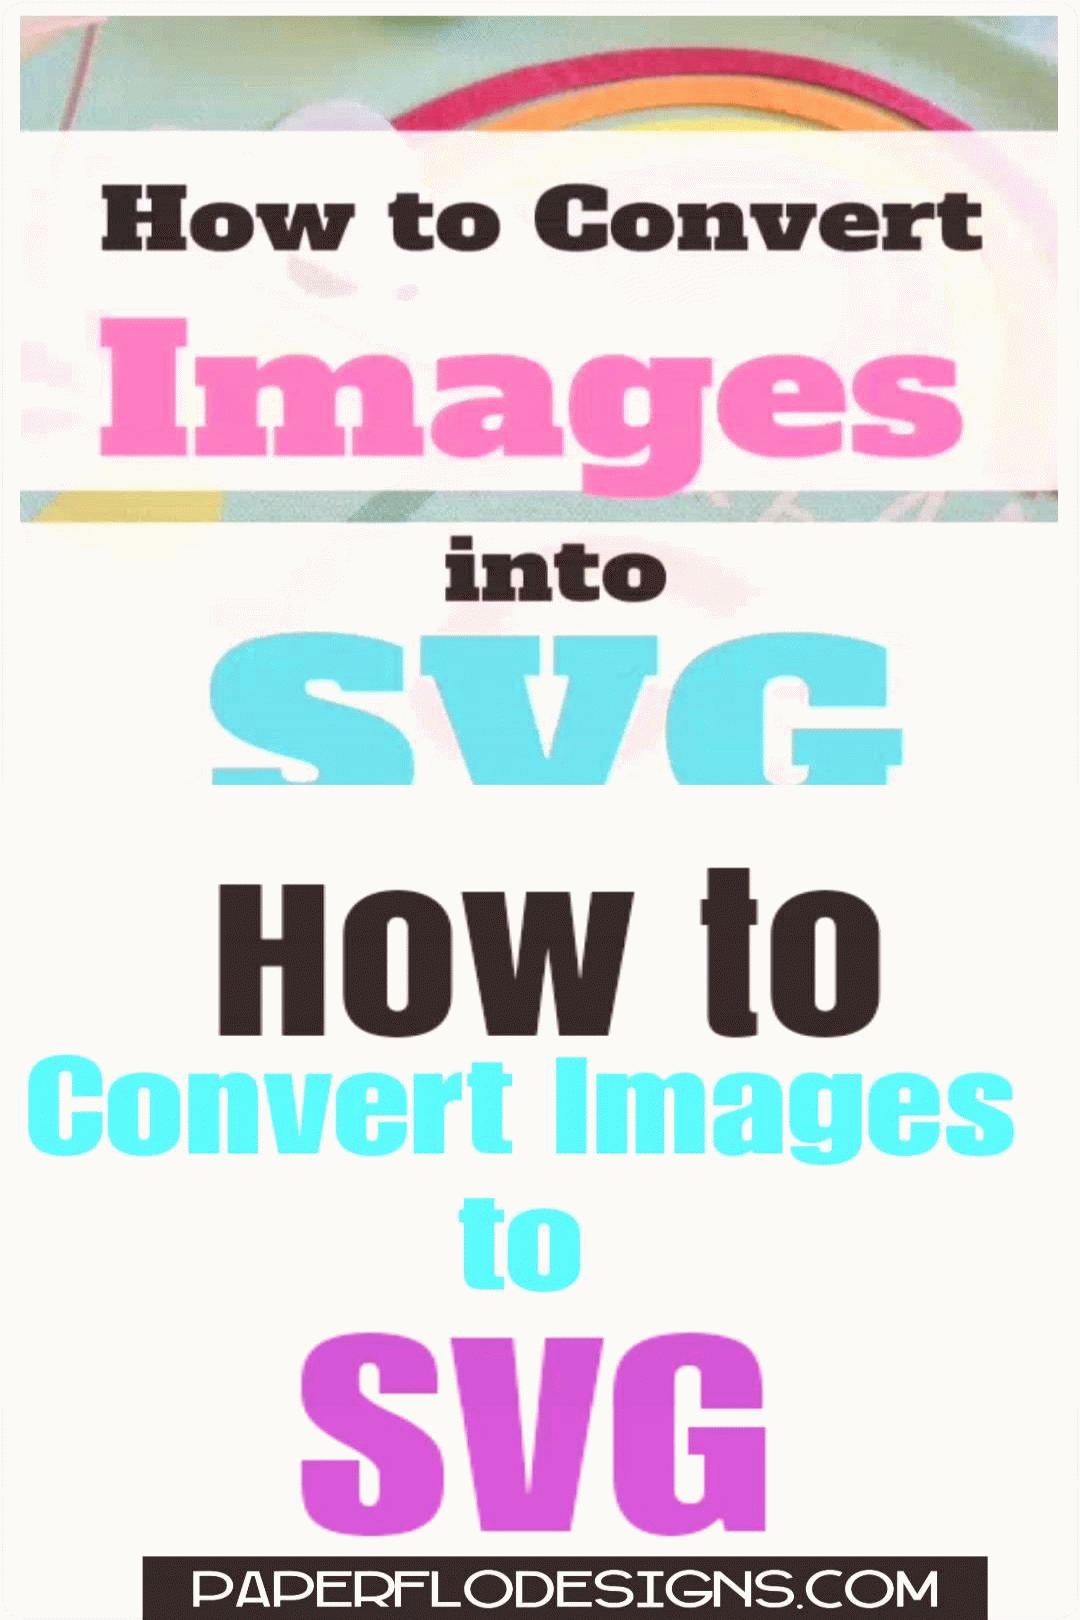 คุณสามารถแปลงรูปภาพเป็น Svg ได้หรือไม่